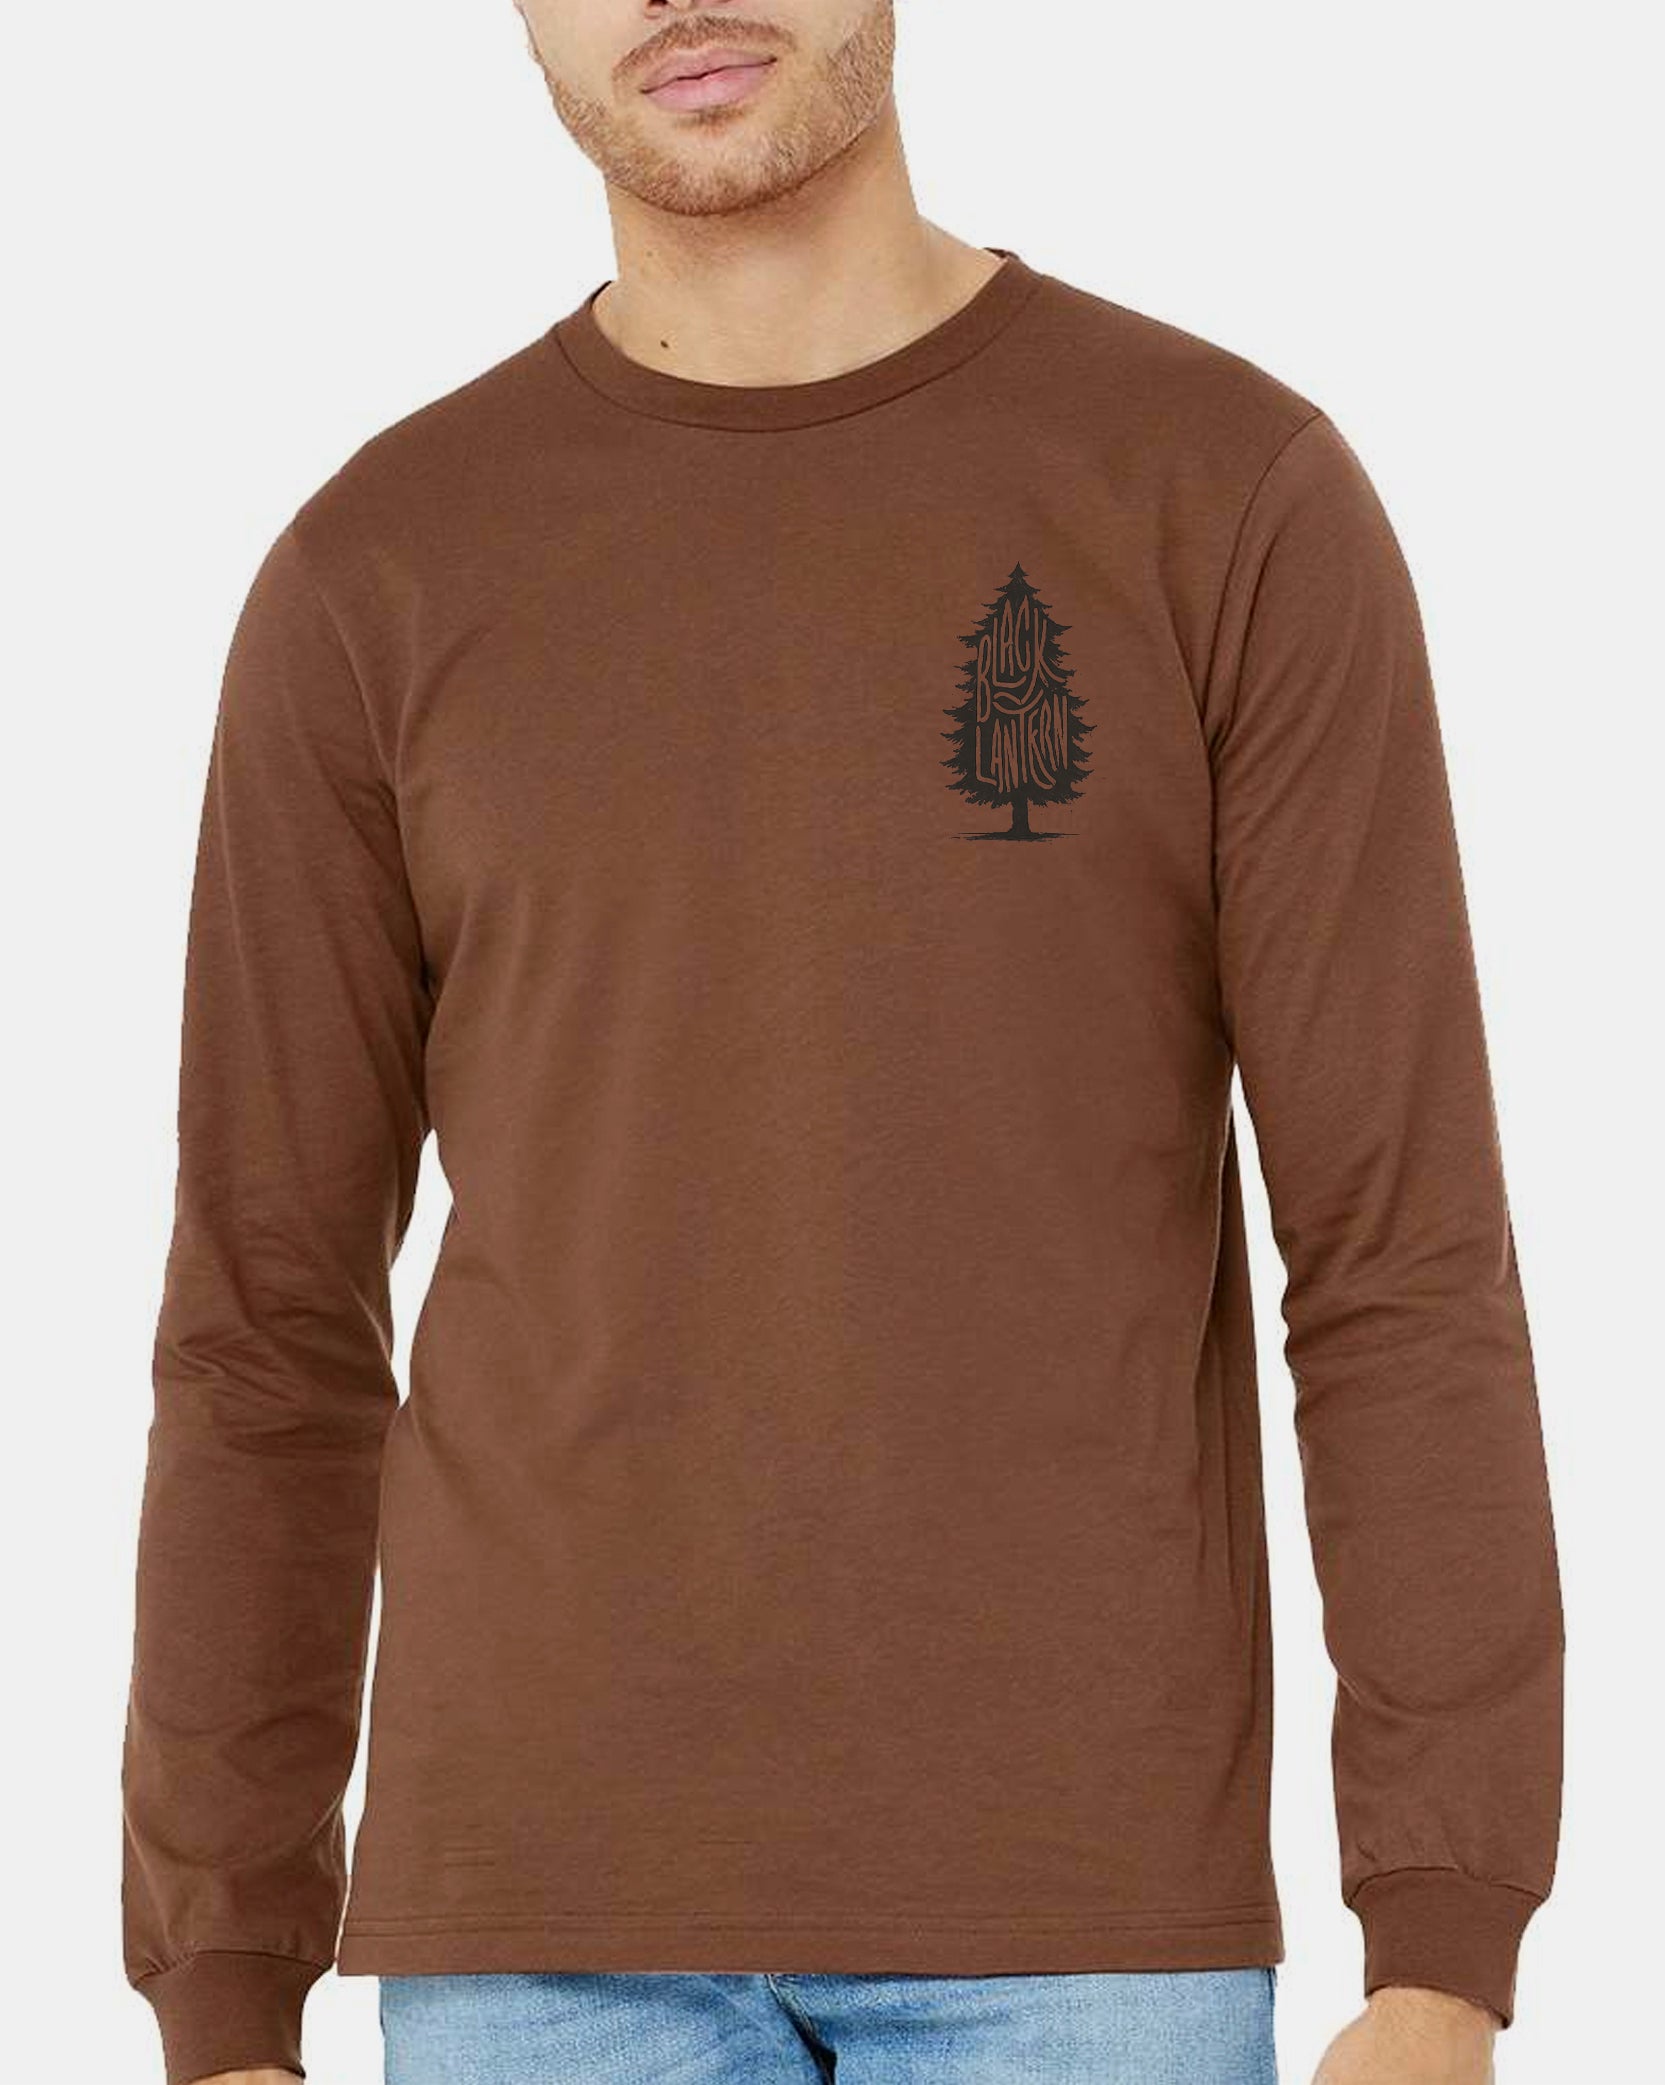 Mens Knotty Pine Tshirt 3